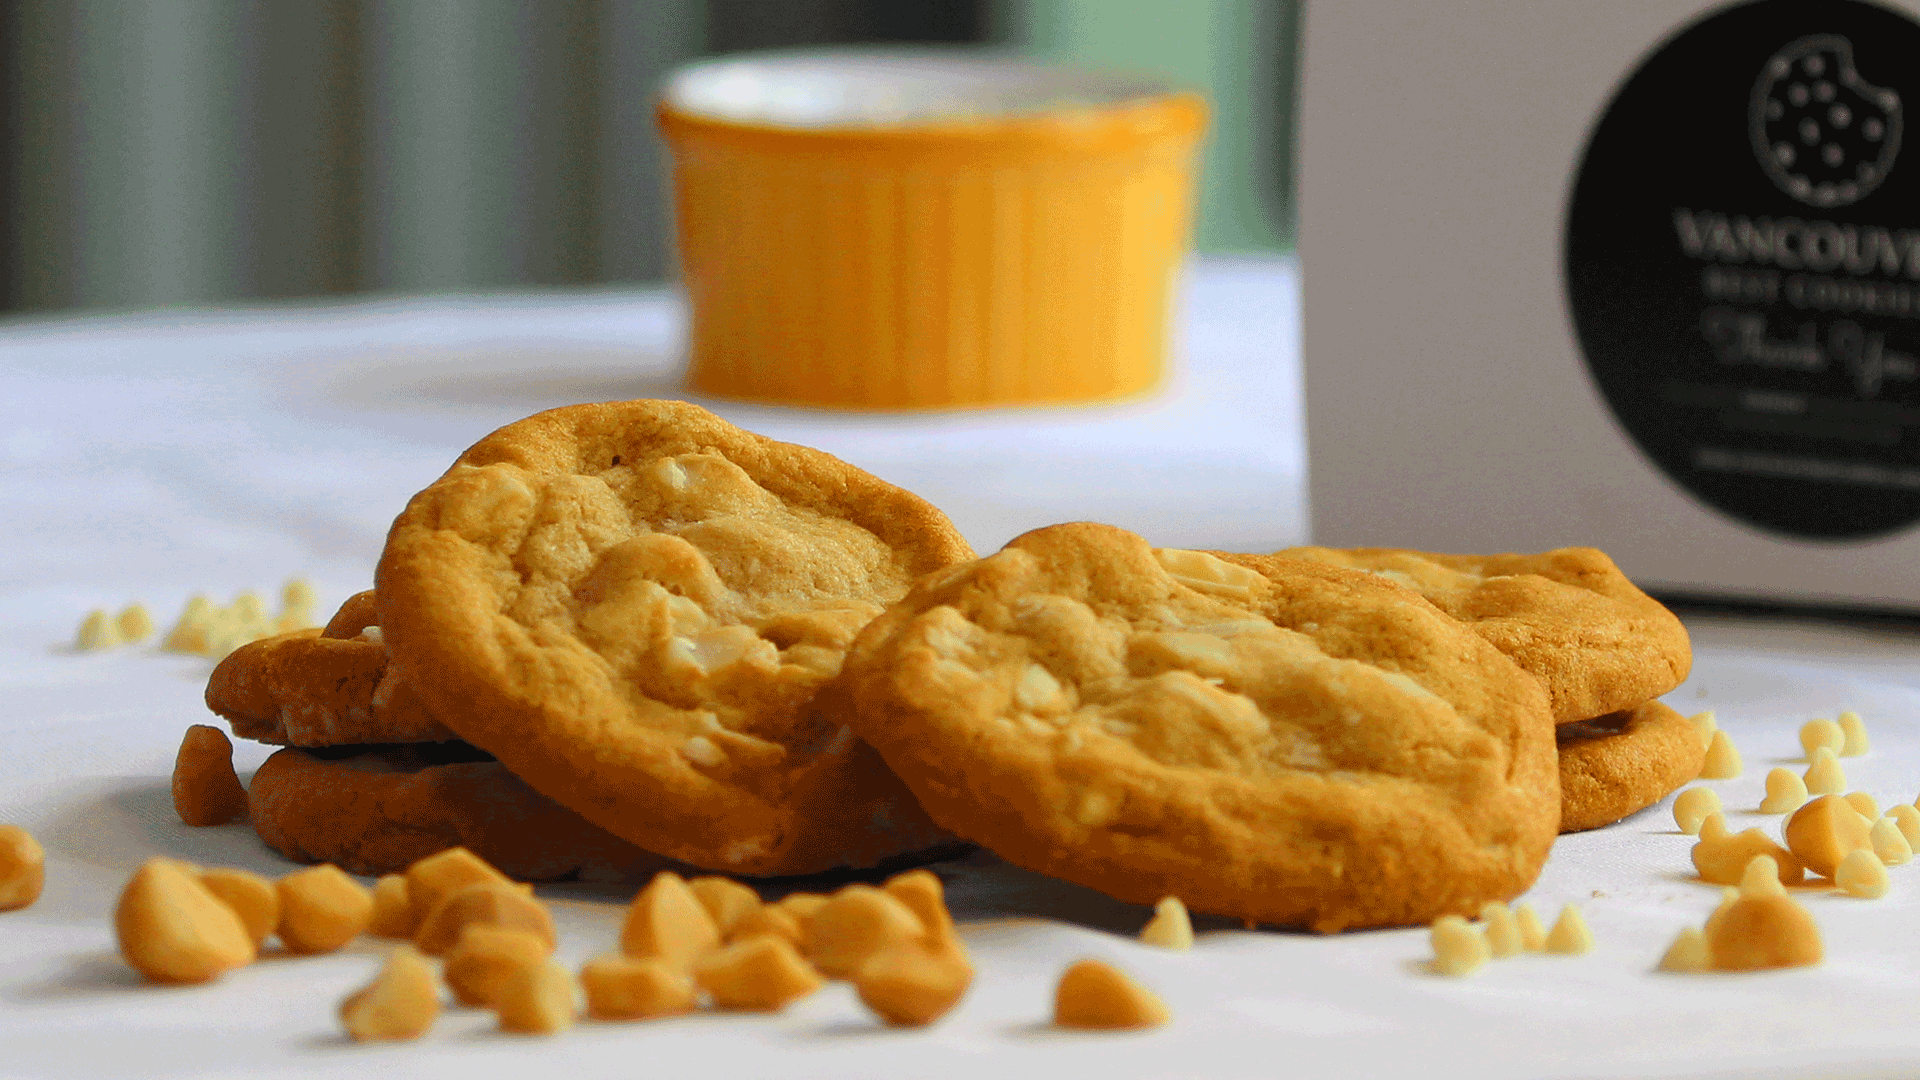 Vancouver Best Cookies - Macadamia & White Chocolate Cookies - Macadamia White Chocolate Gourmet Cookie